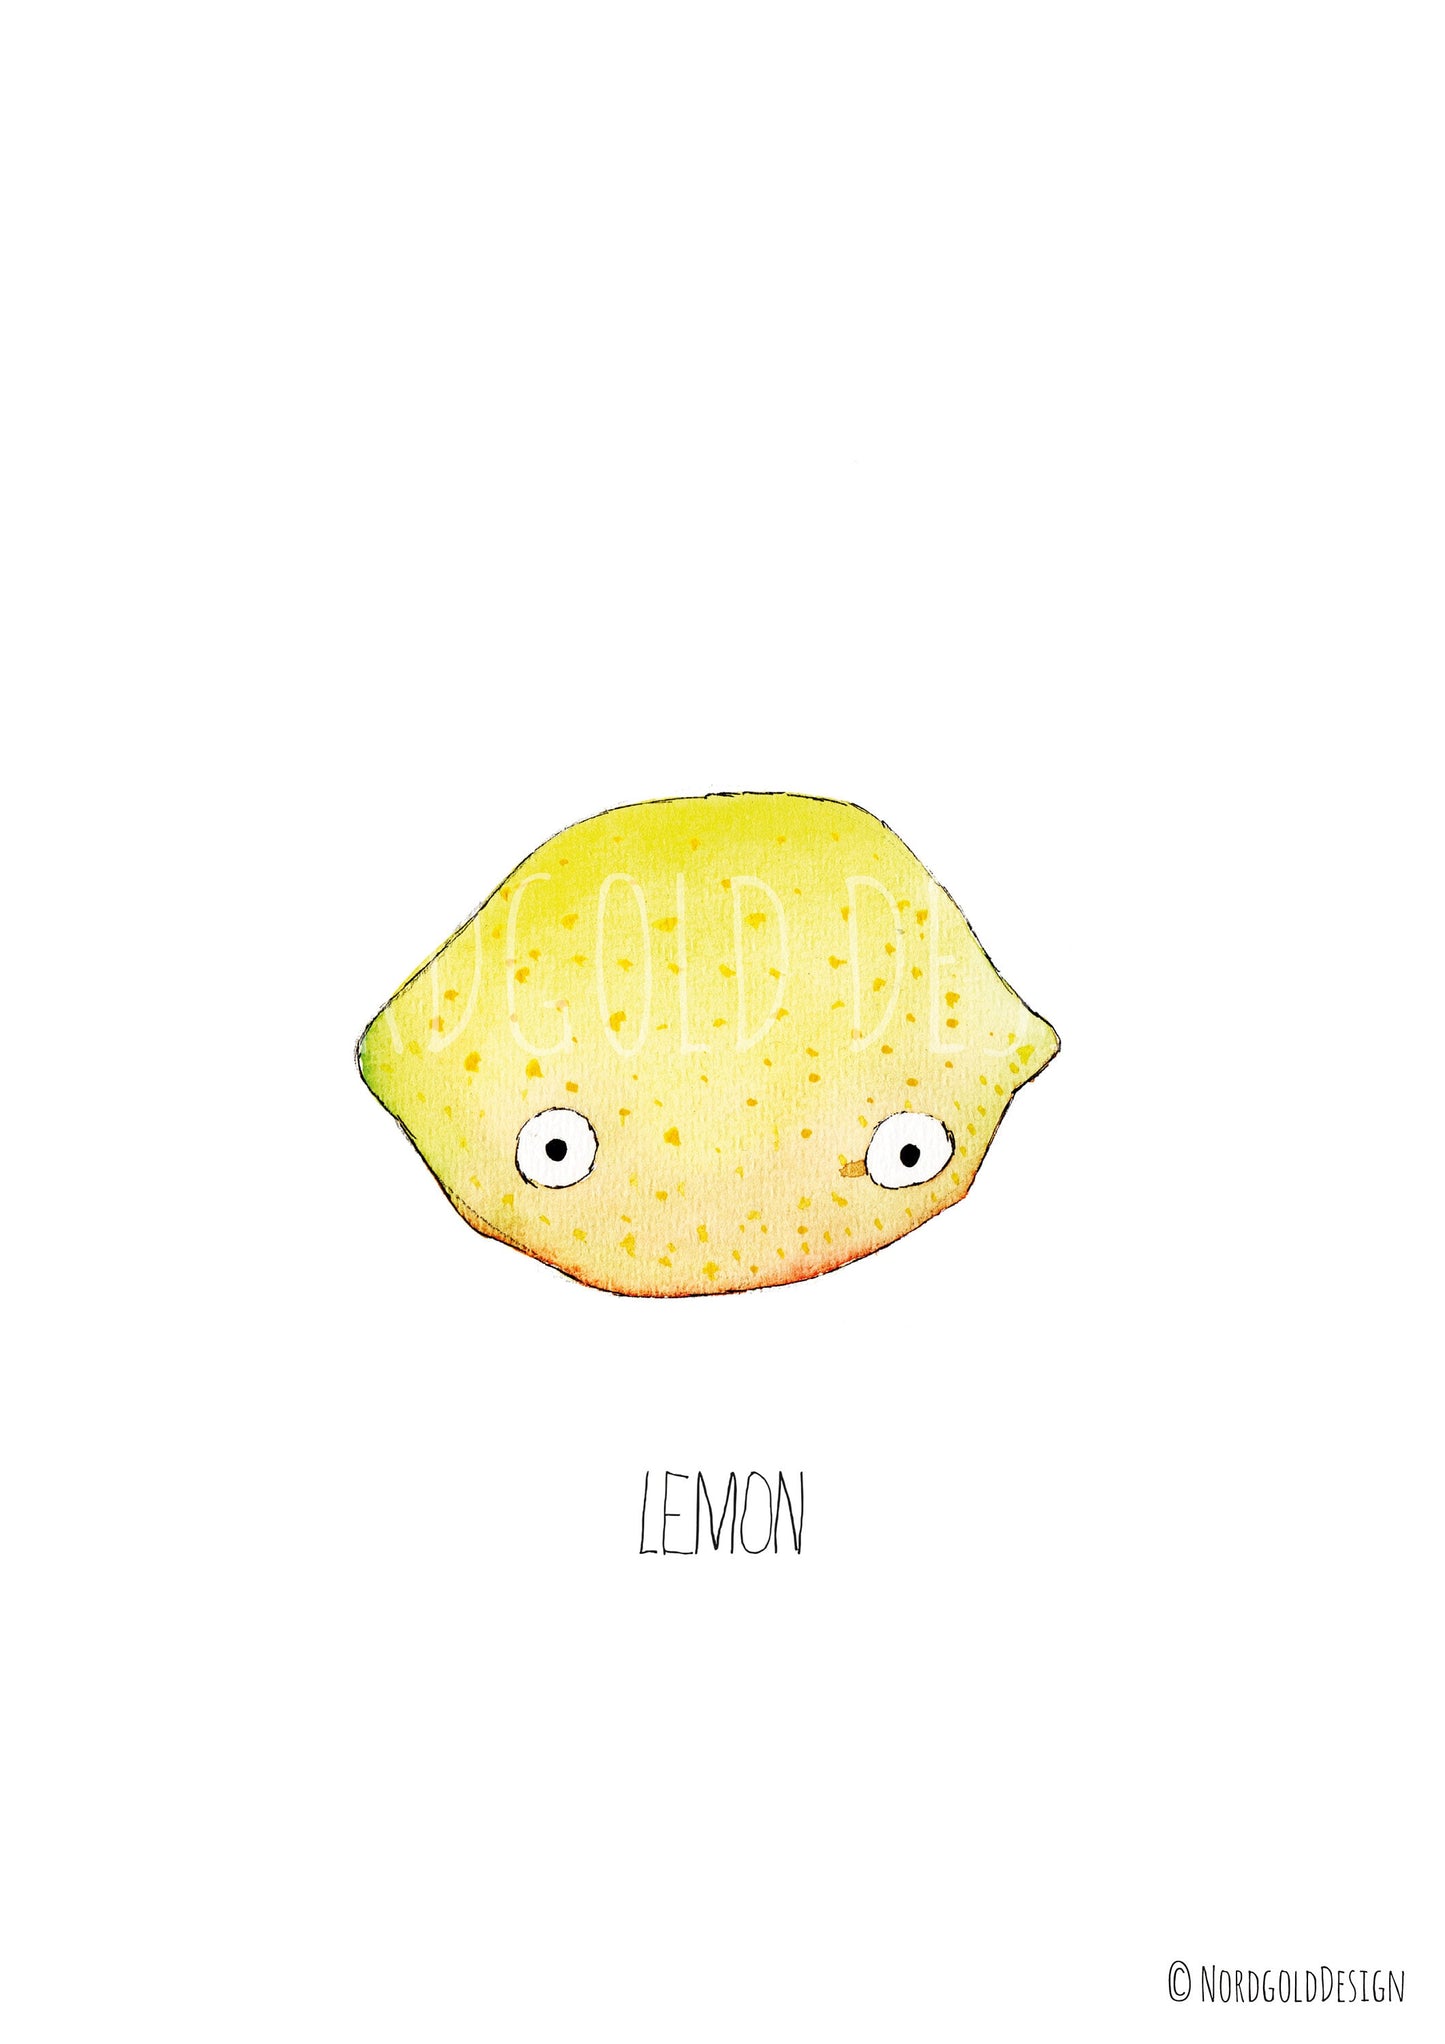 Kinderzimmer Kunstdruck Zitrone mit Augen - Süßes minimalistisches Früchte Bild, Lemon, sofort Download, Illustration Poster, Aquarell Druck